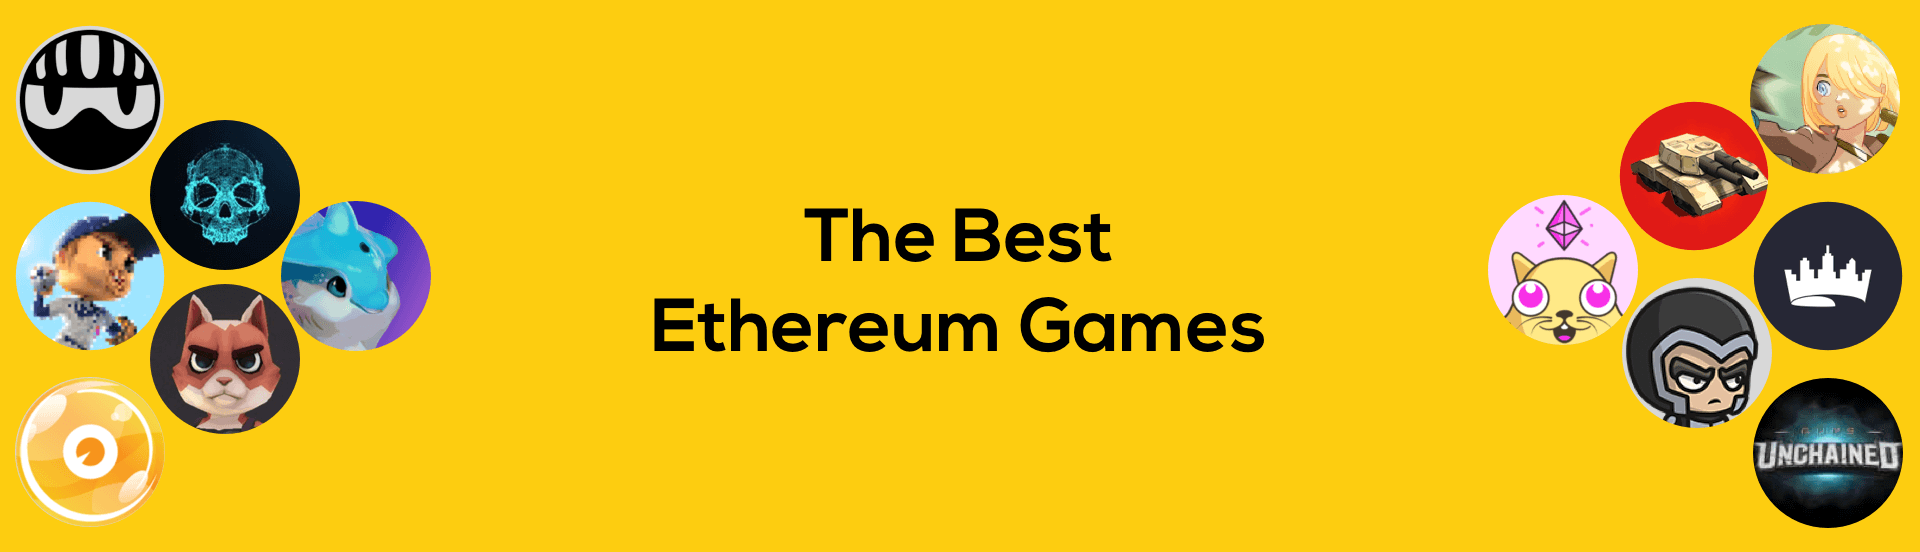 Etherium Games